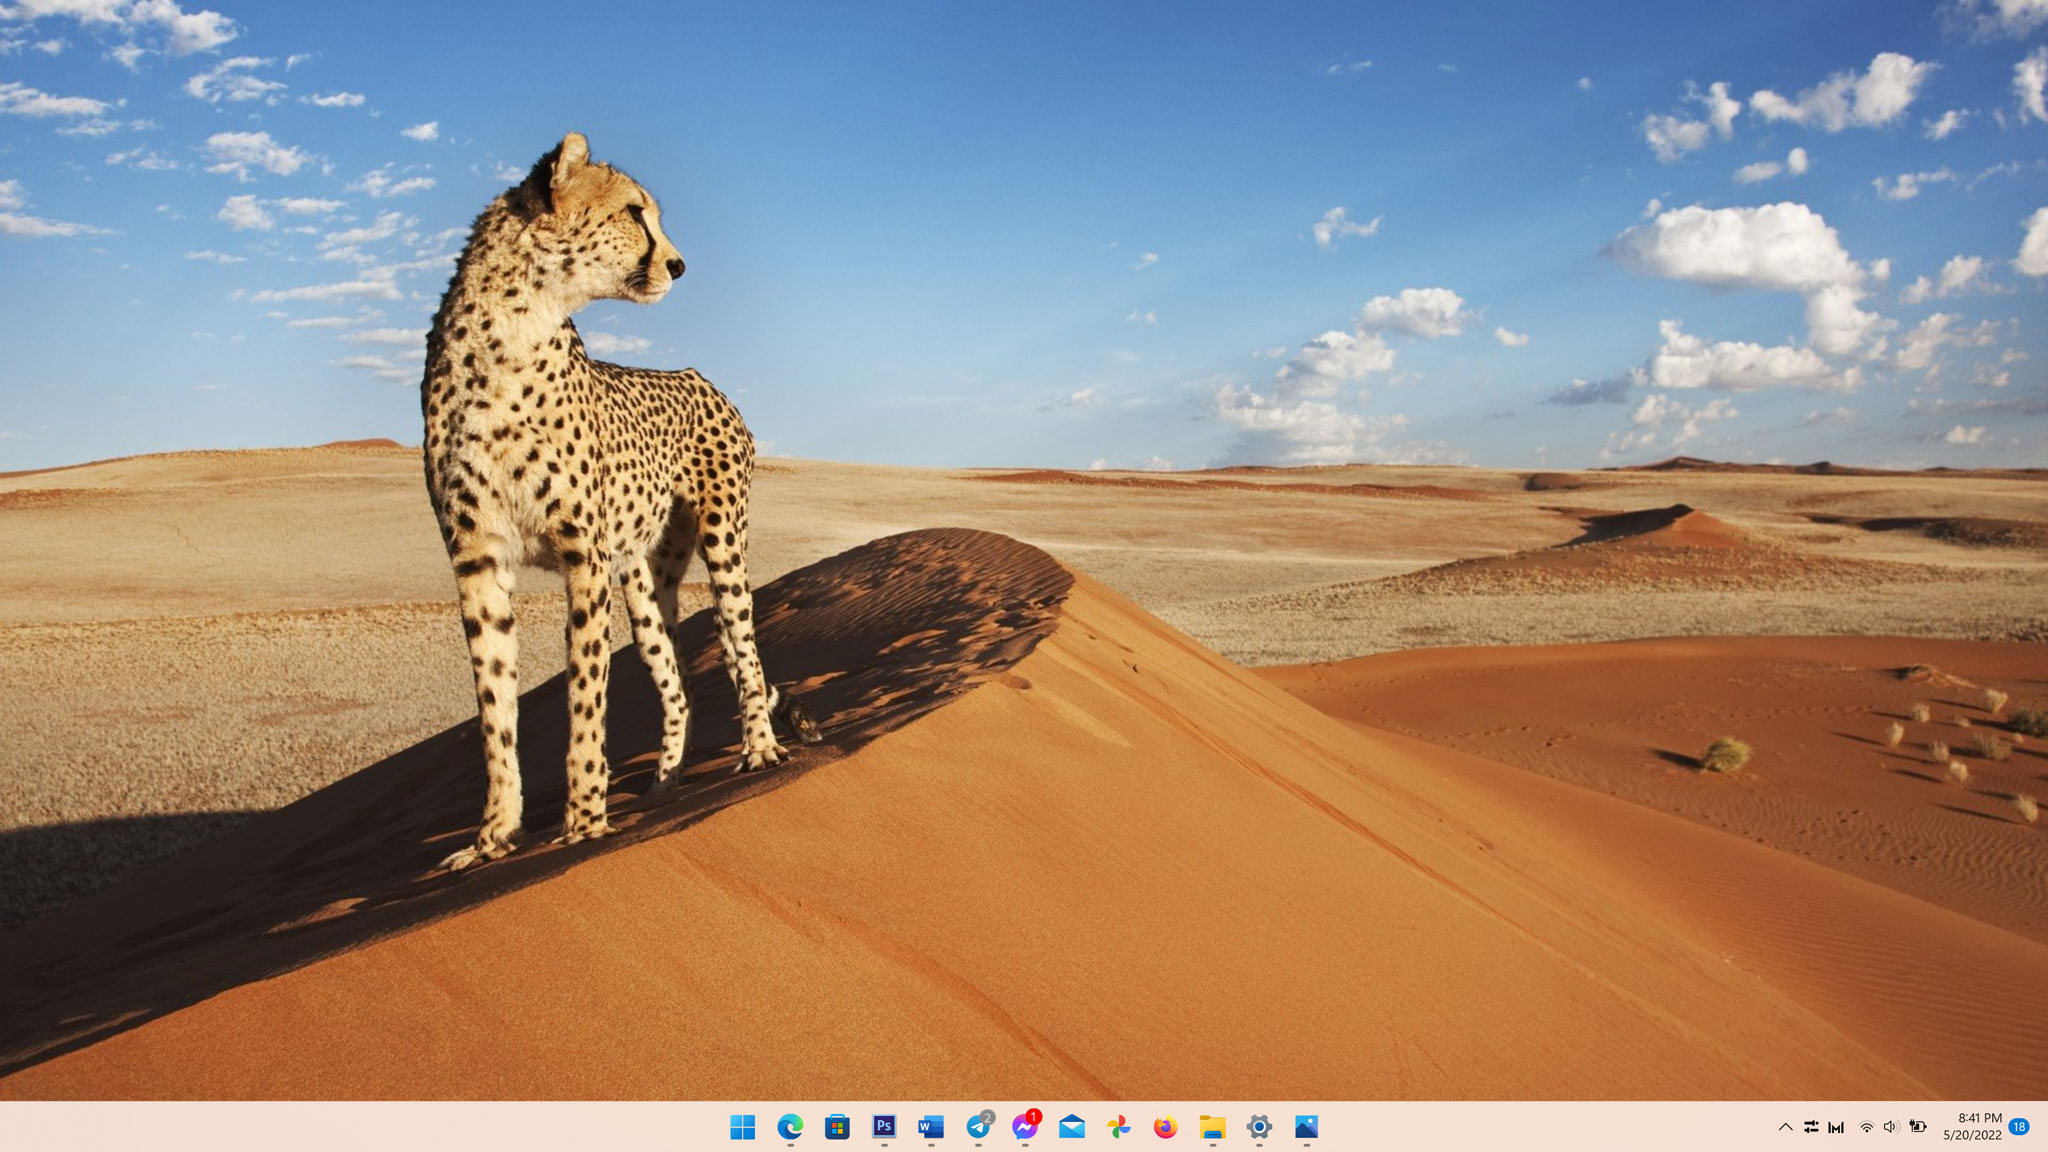 Windows 11 hình nền tự động: Tính năng hình nền tự động của Windows 11 sẽ khiến cho máy tính của bạn thật cuốn hút và đặc biệt hơn bao giờ hết. Với sự đổi mới về thiết kế và chất lượng hình ảnh tuyệt vời, Windows 11 càng khiến cho trải nghiệm sử dụng máy tính của bạn thêm phần thú vị và đầy sáng tạo.